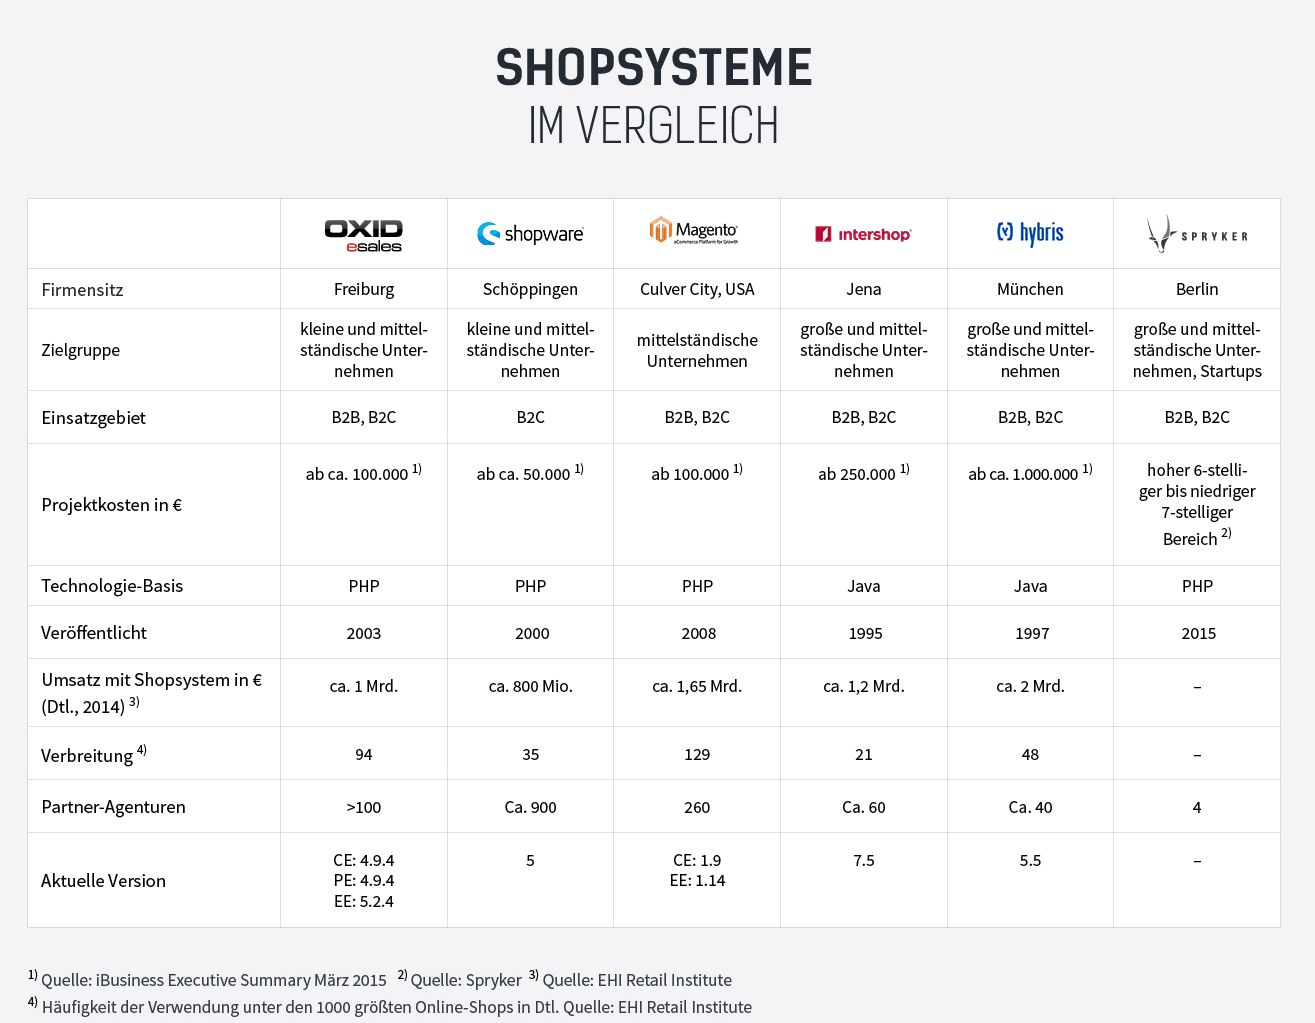 Quelle: https://votum.de/fokus-e-commerce/fokus-e-commerceshopsysteme-vergleich/